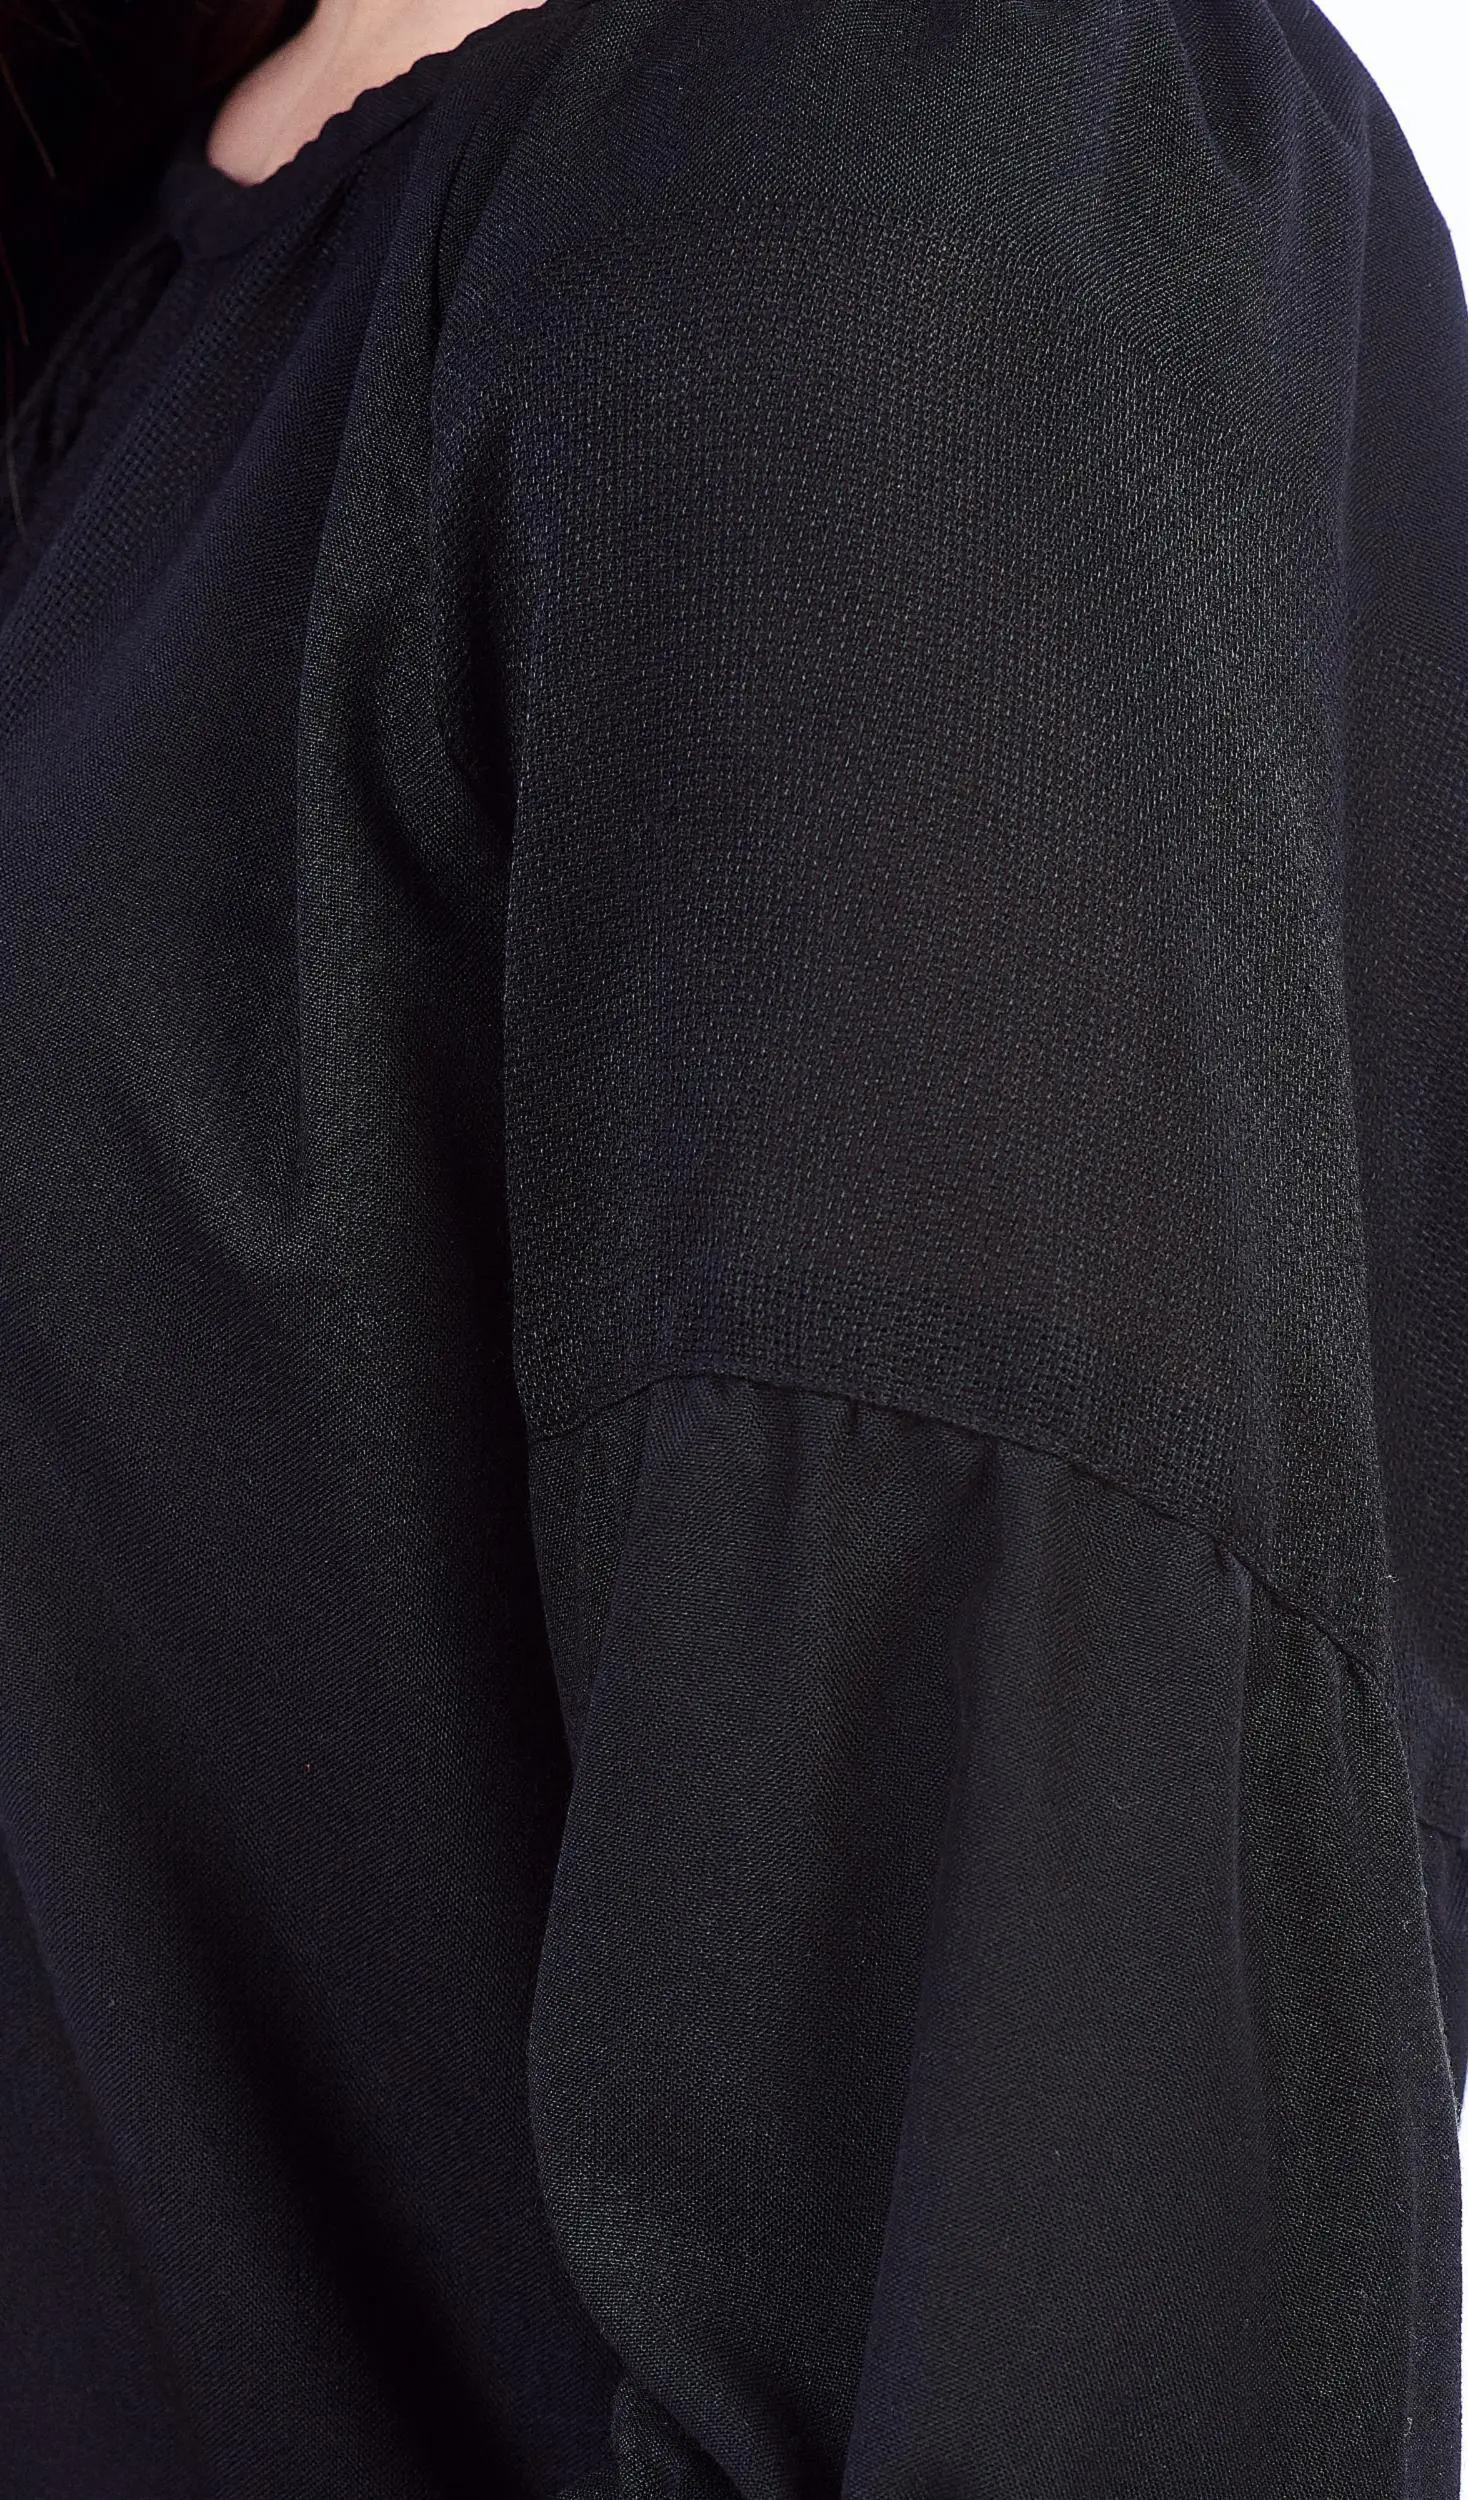 ТПК-172 03-02/09 Сорочка жіноча під вишивку, чорна, 3/4 рукав, розмір 42